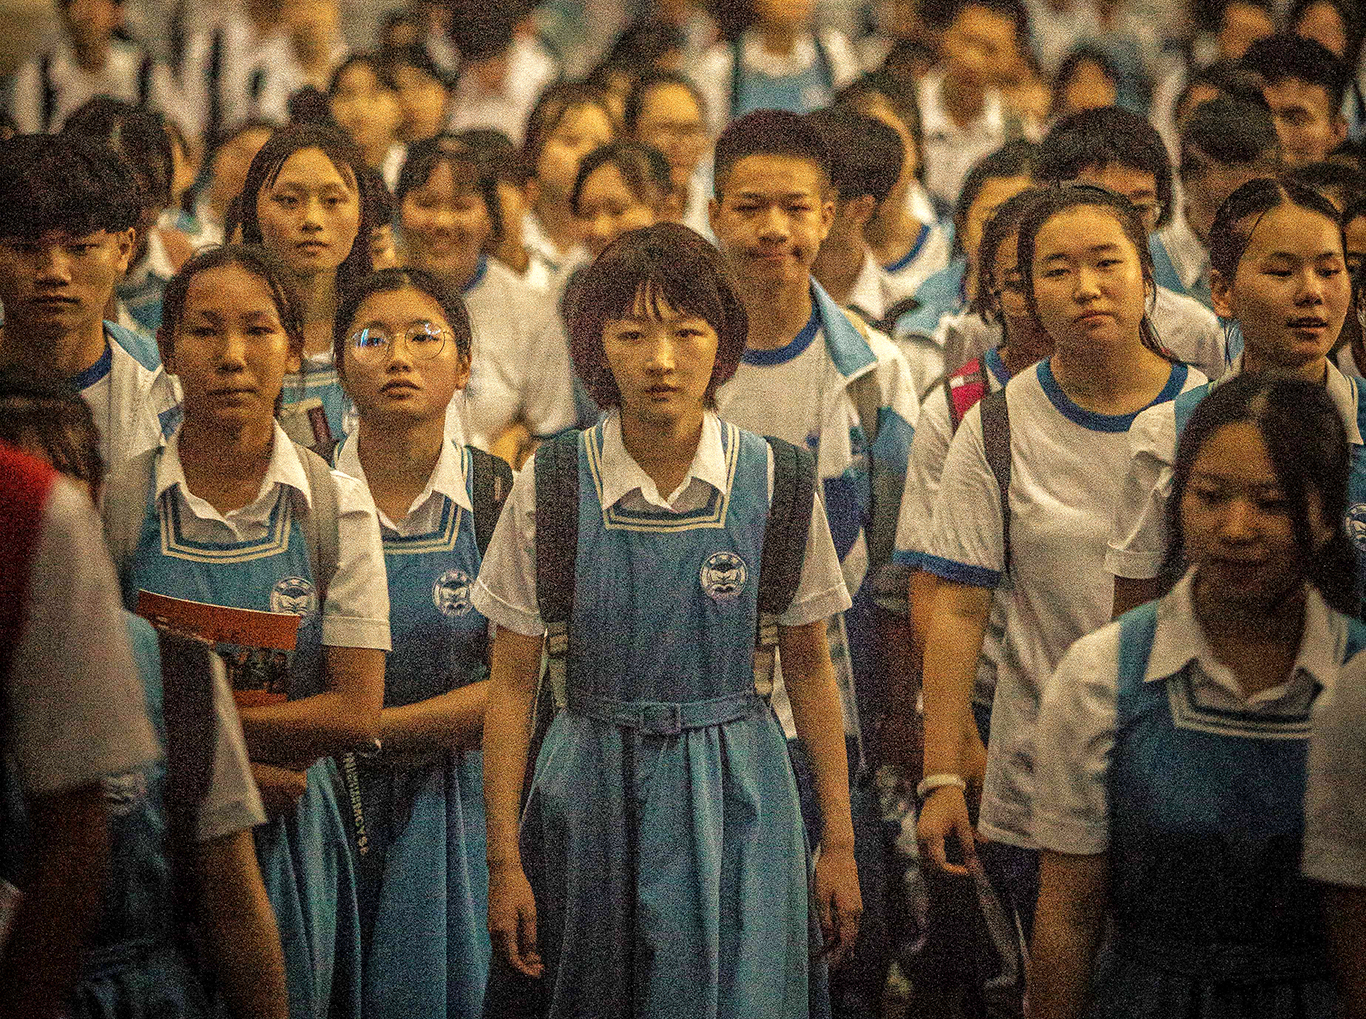 Hong Kong film 'Better Days' earns Oscar nomination for Best International  Feature Film